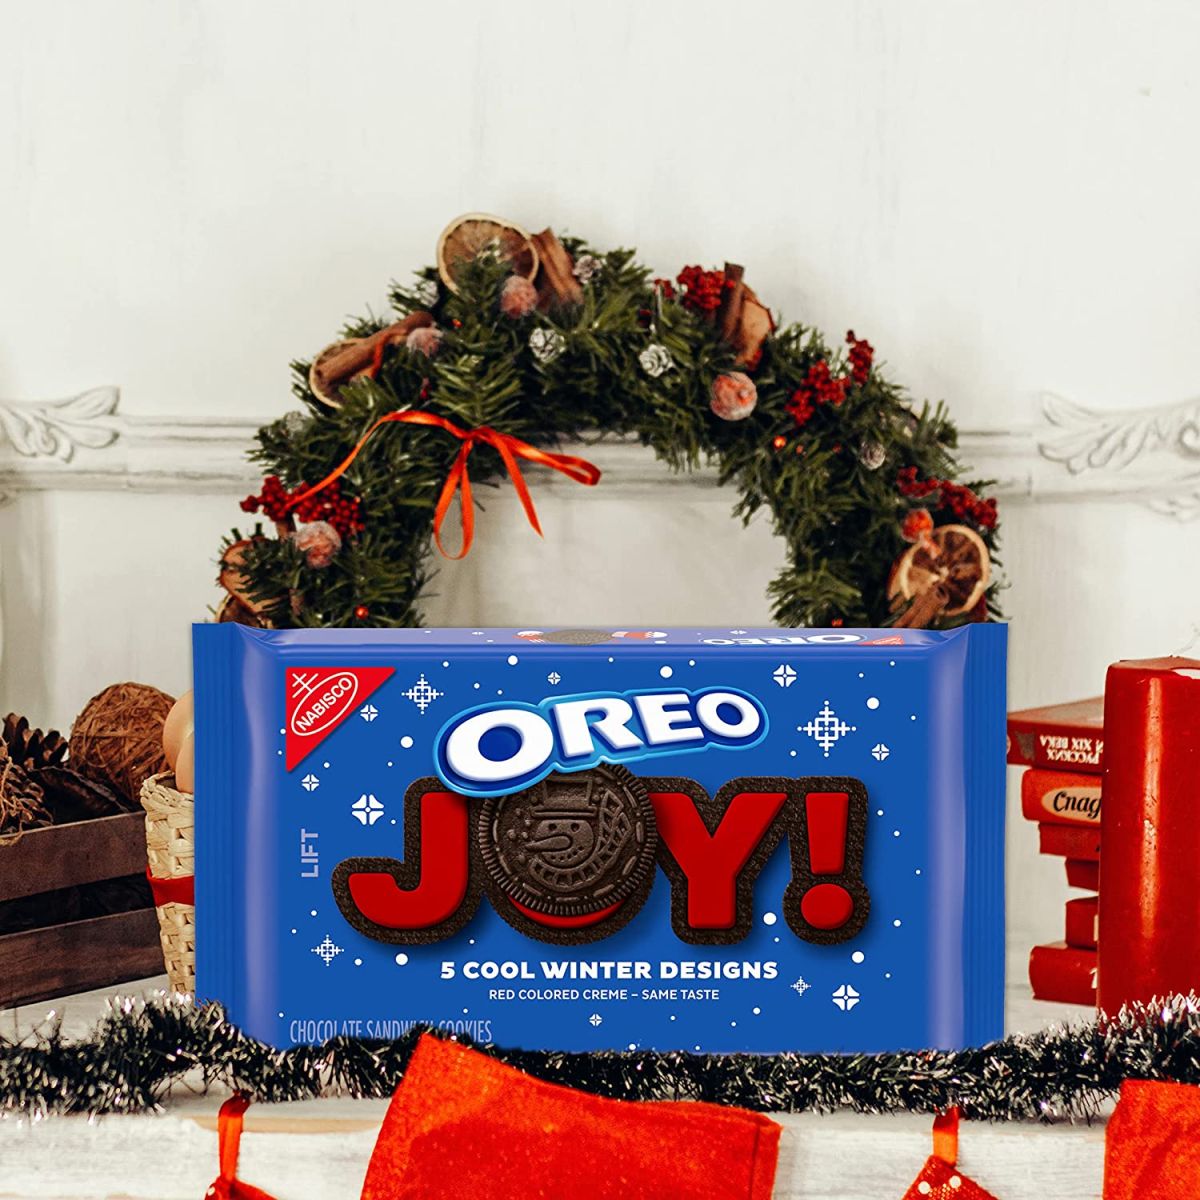 Las galletas Oreo son las favoritas de los estadounidenses y en Navidad puedes encontrar paquetes festivos 